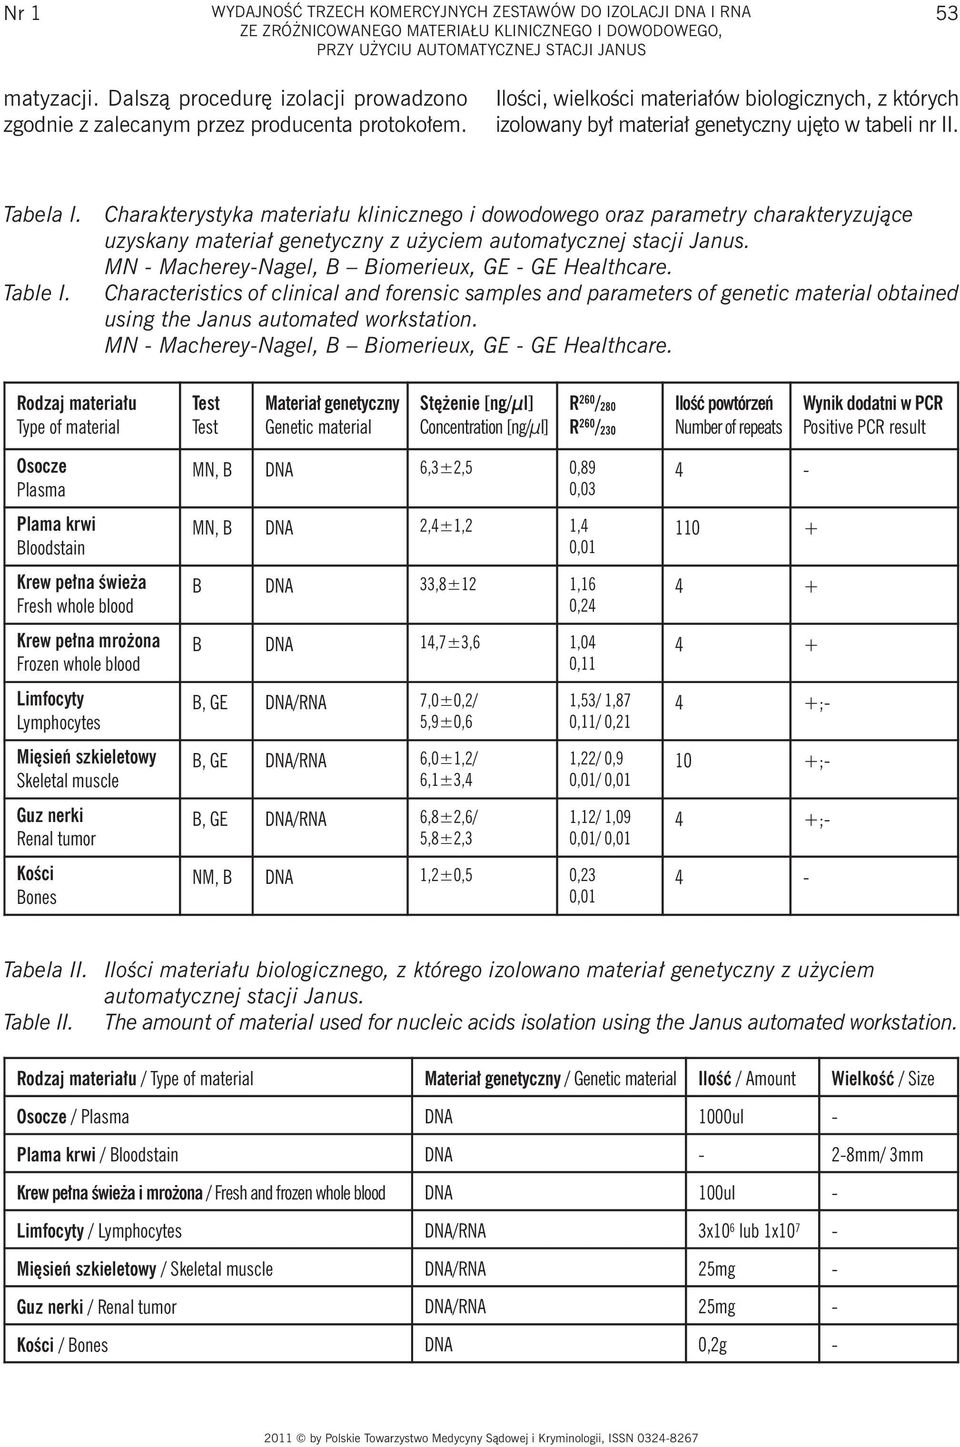 Tabela I. Table I. Charakterystyka materiału klinicznego i dowodowego oraz parametry charakteryzujące uzyskany materiał genetyczny z użyciem automatycznej stacji Janus.